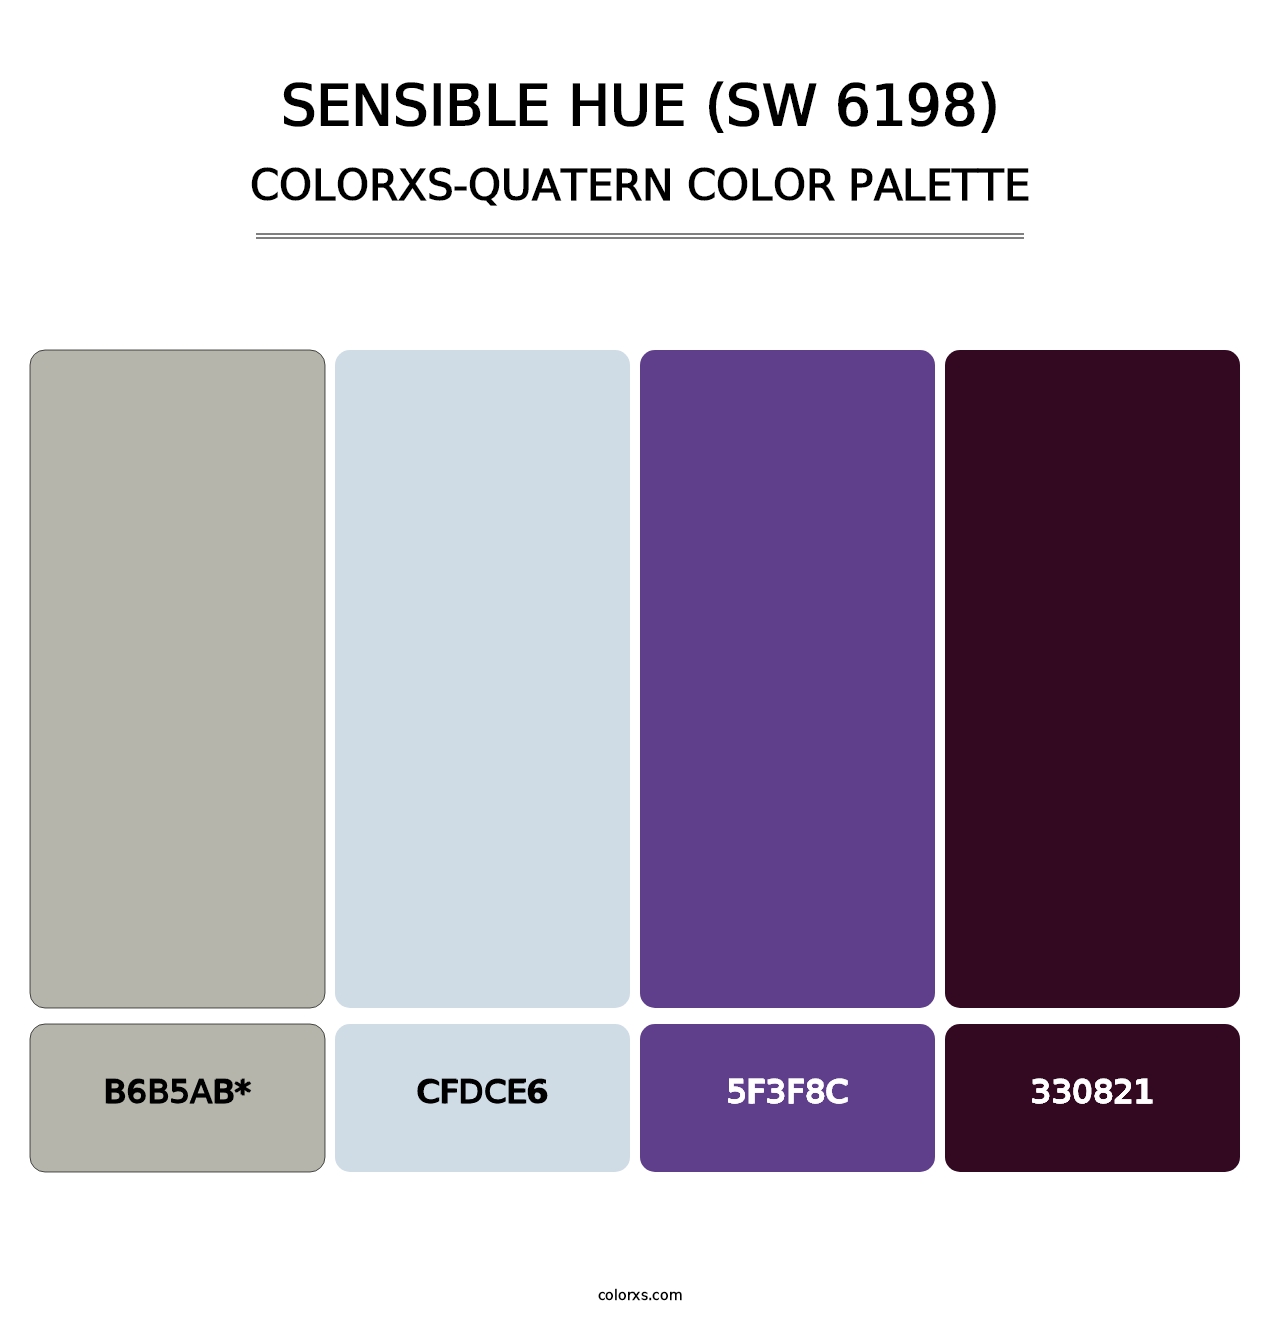 Sensible Hue (SW 6198) - Colorxs Quatern Palette